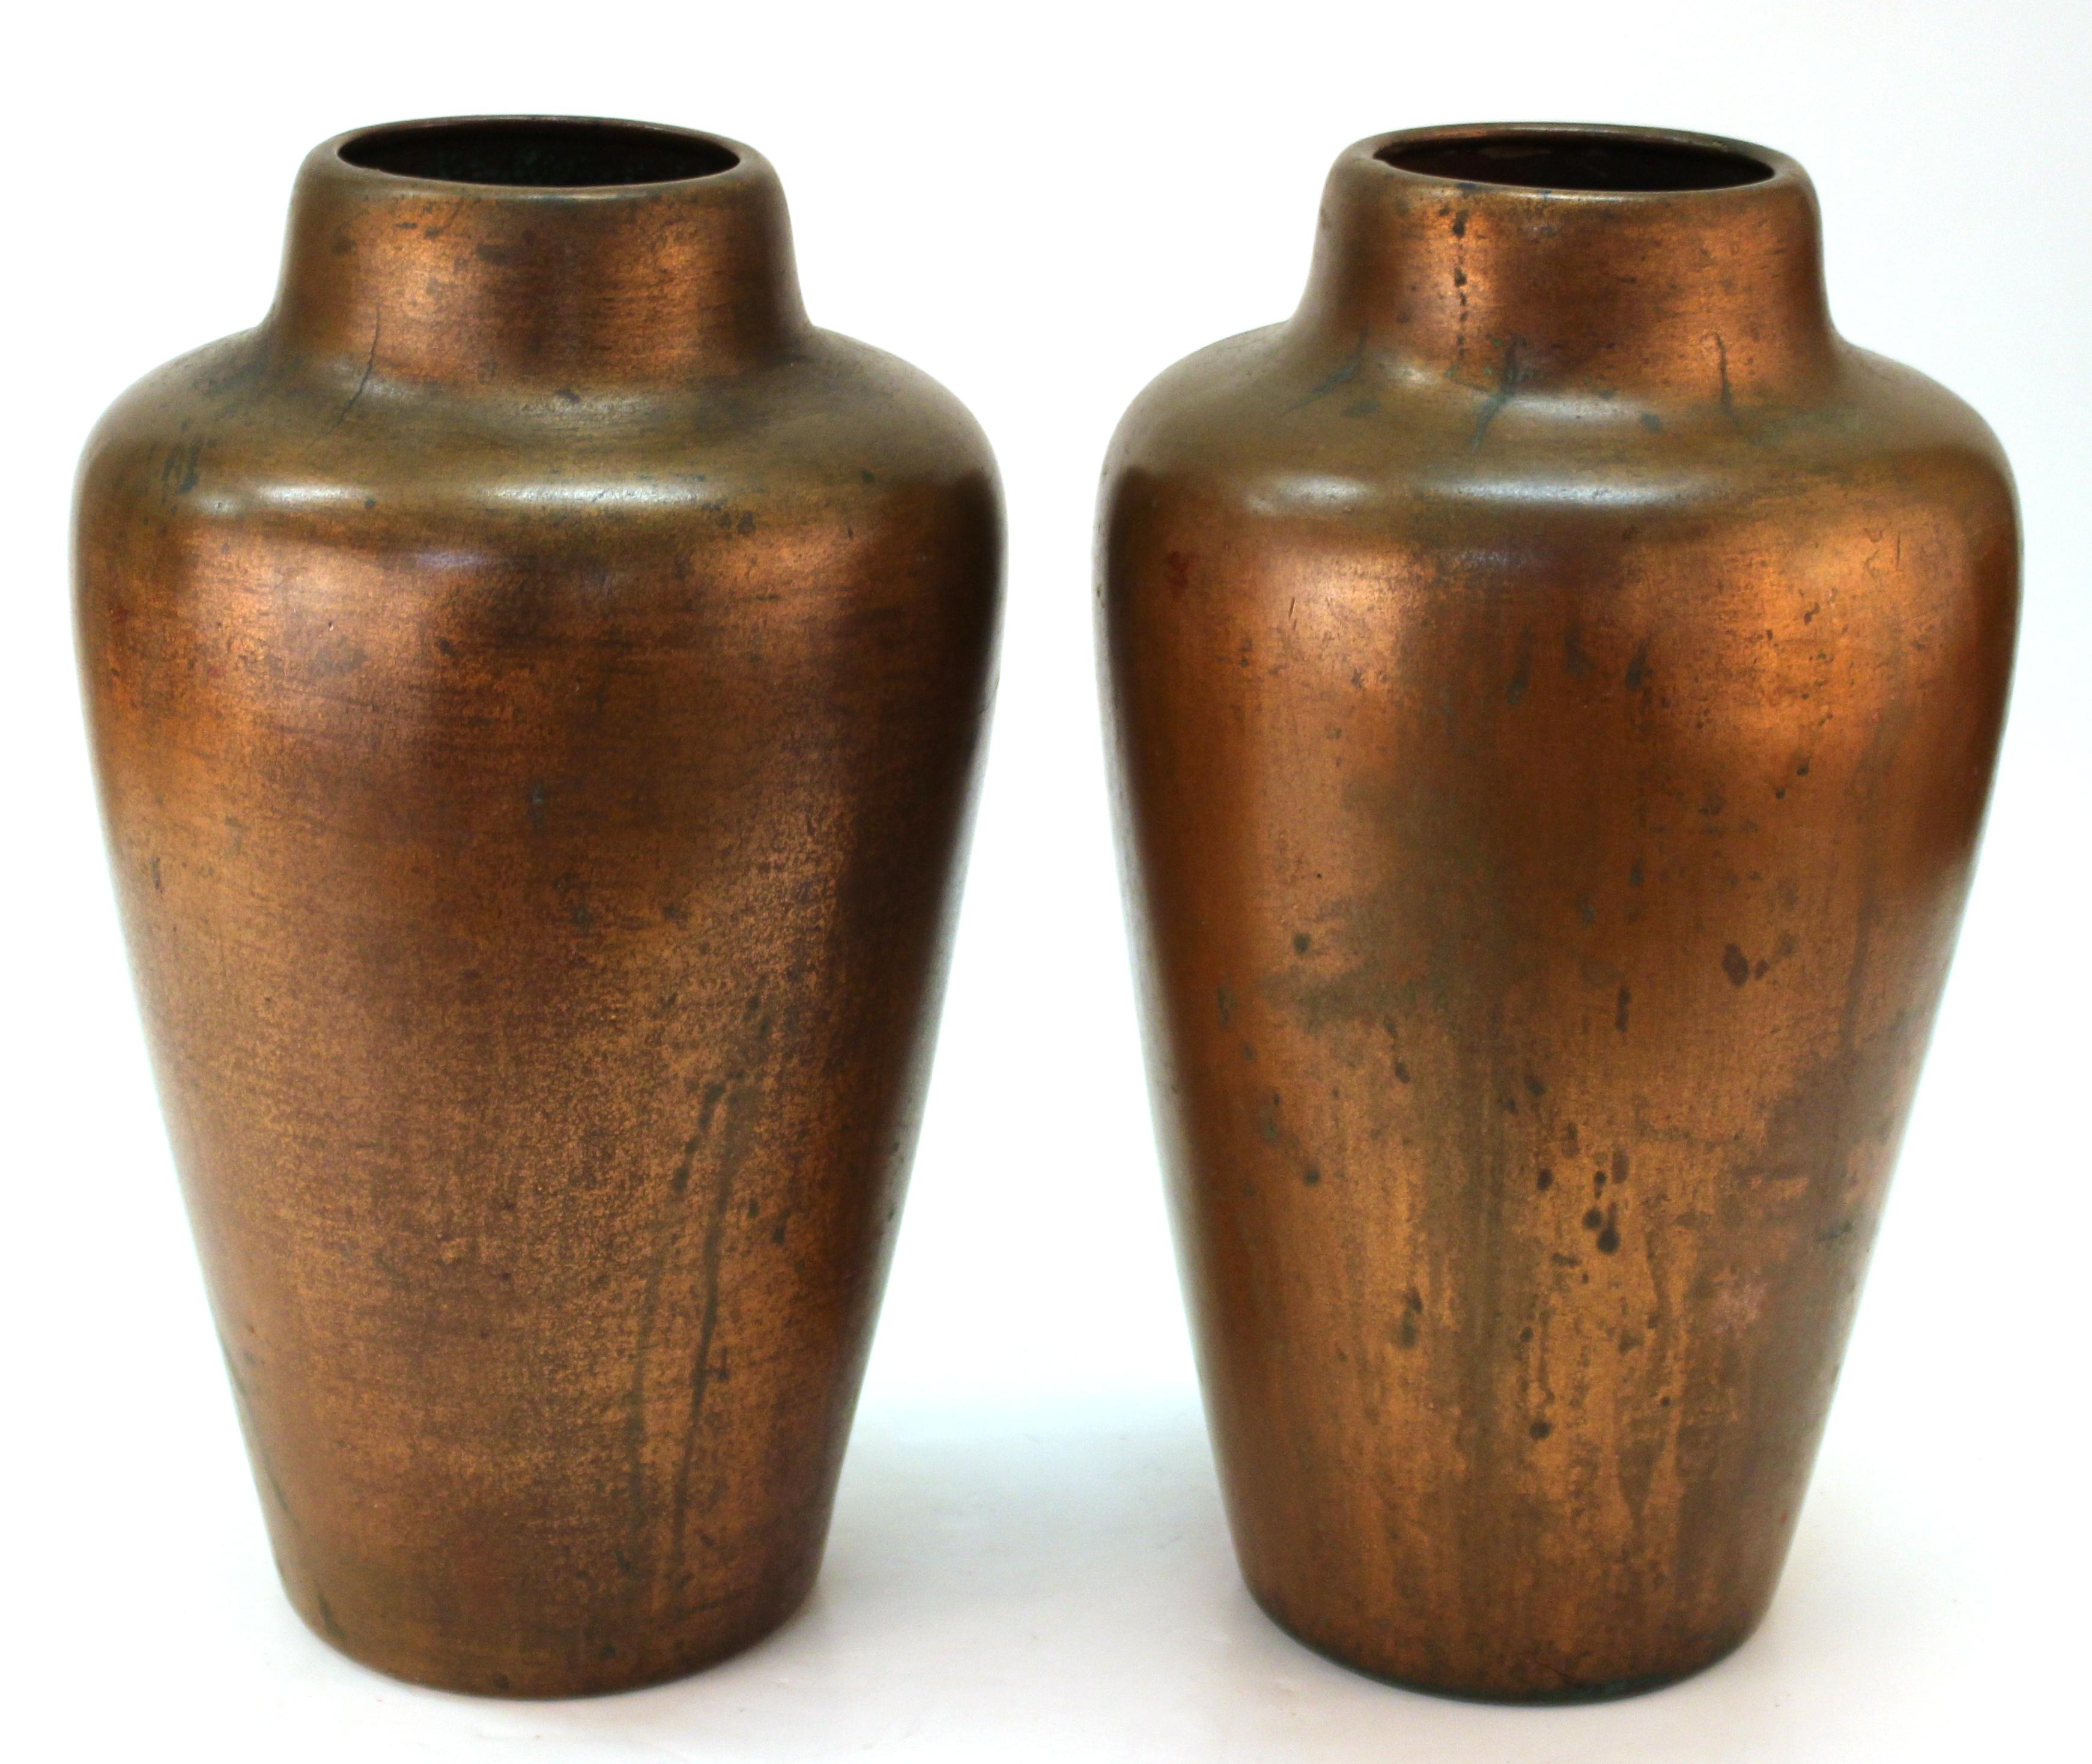 Clewell American Arts & Kunsthandwerkliche Vasen aus kupferhaltiger Keramik (Arts and Crafts)